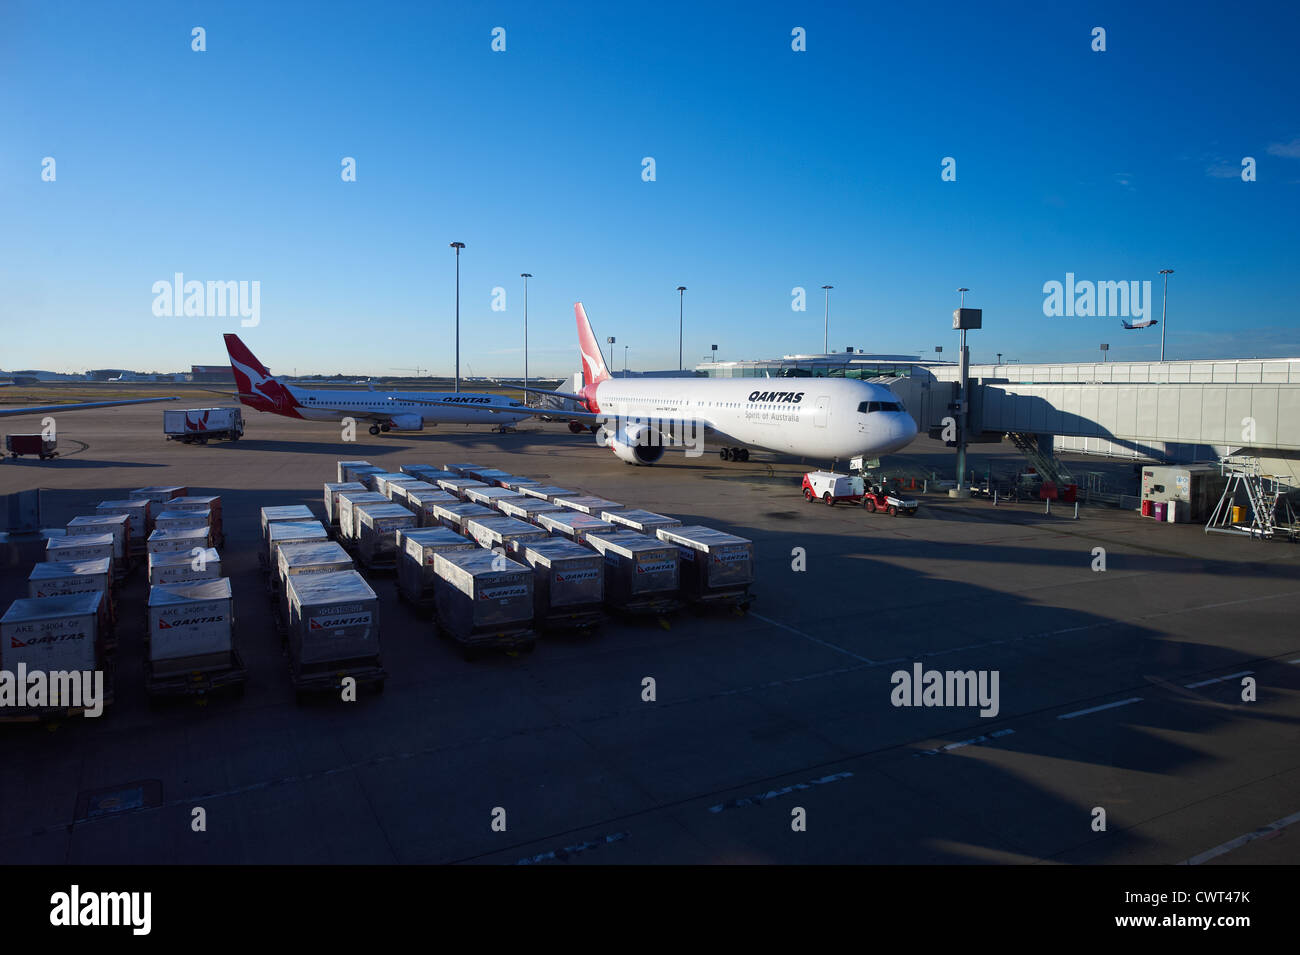 Avions Qantas au terminal domestique de Brisbane Australie Banque D'Images